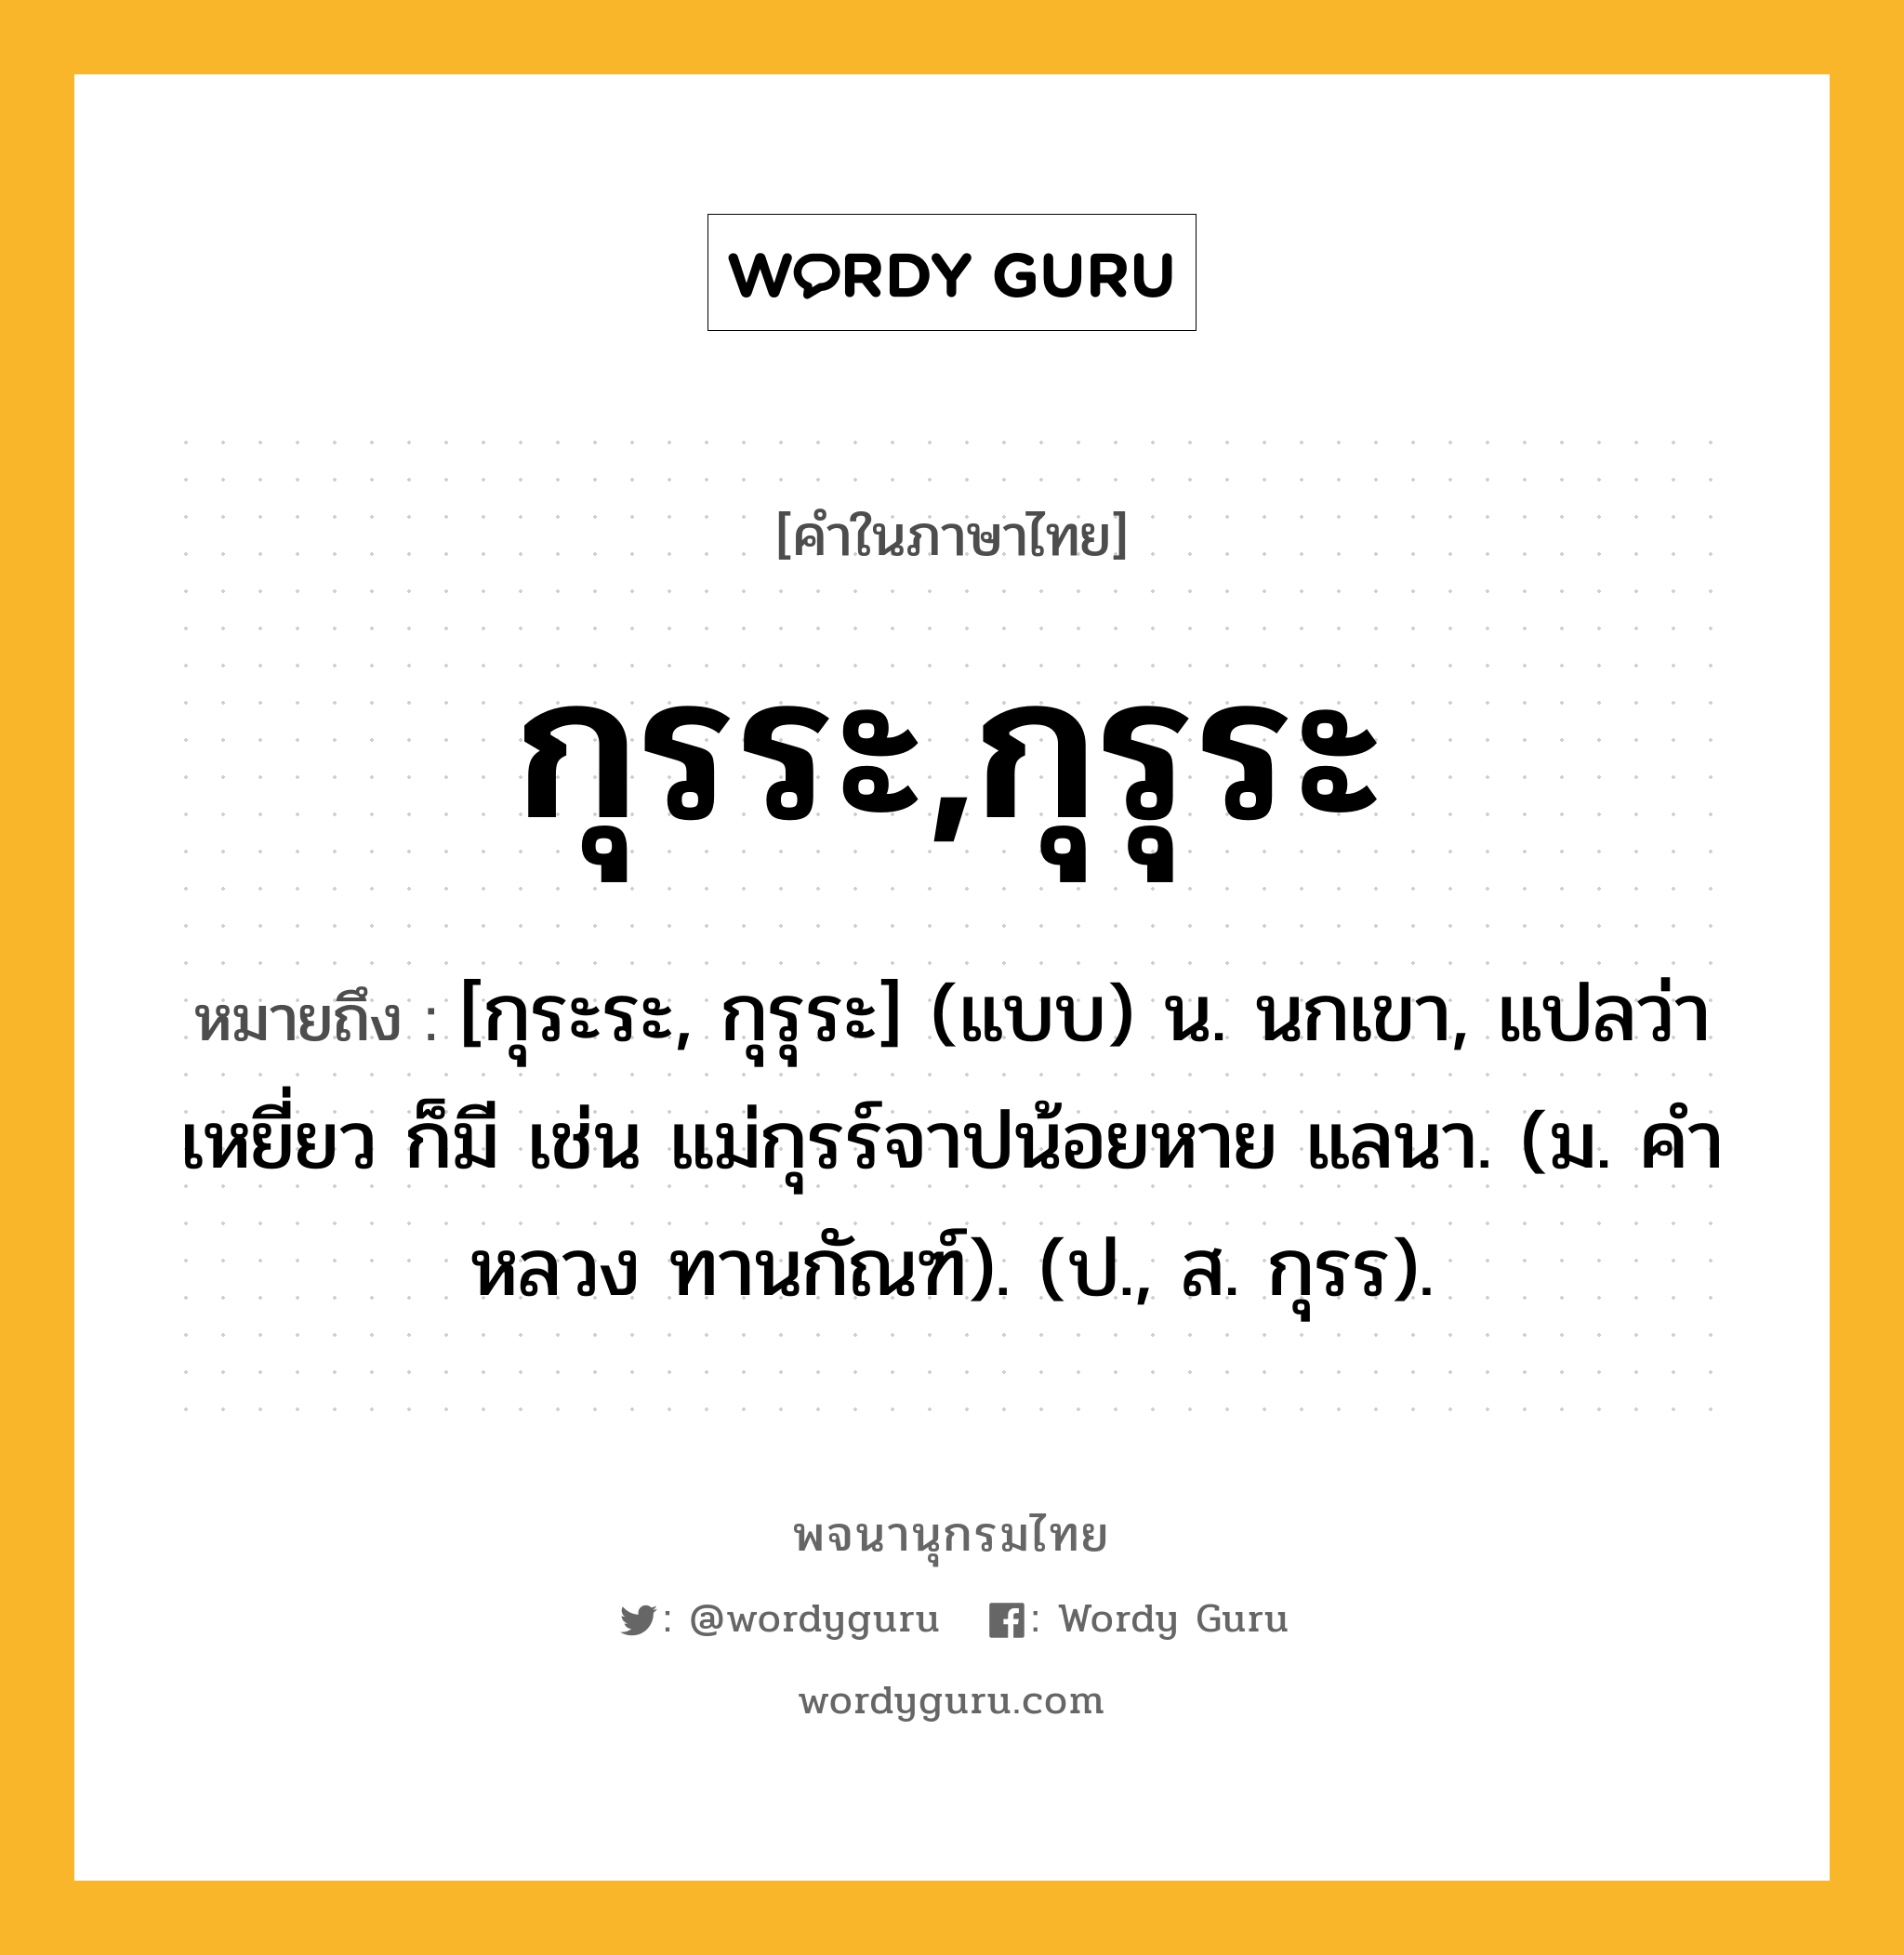 กุรระ,กุรุระ ความหมาย หมายถึงอะไร?, คำในภาษาไทย กุรระ,กุรุระ หมายถึง [กุระระ, กุรุระ] (แบบ) น. นกเขา, แปลว่า เหยี่ยว ก็มี เช่น แม่กุรร์จาปน้อยหาย แลนา. (ม. คําหลวง ทานกัณฑ์). (ป., ส. กุรร).